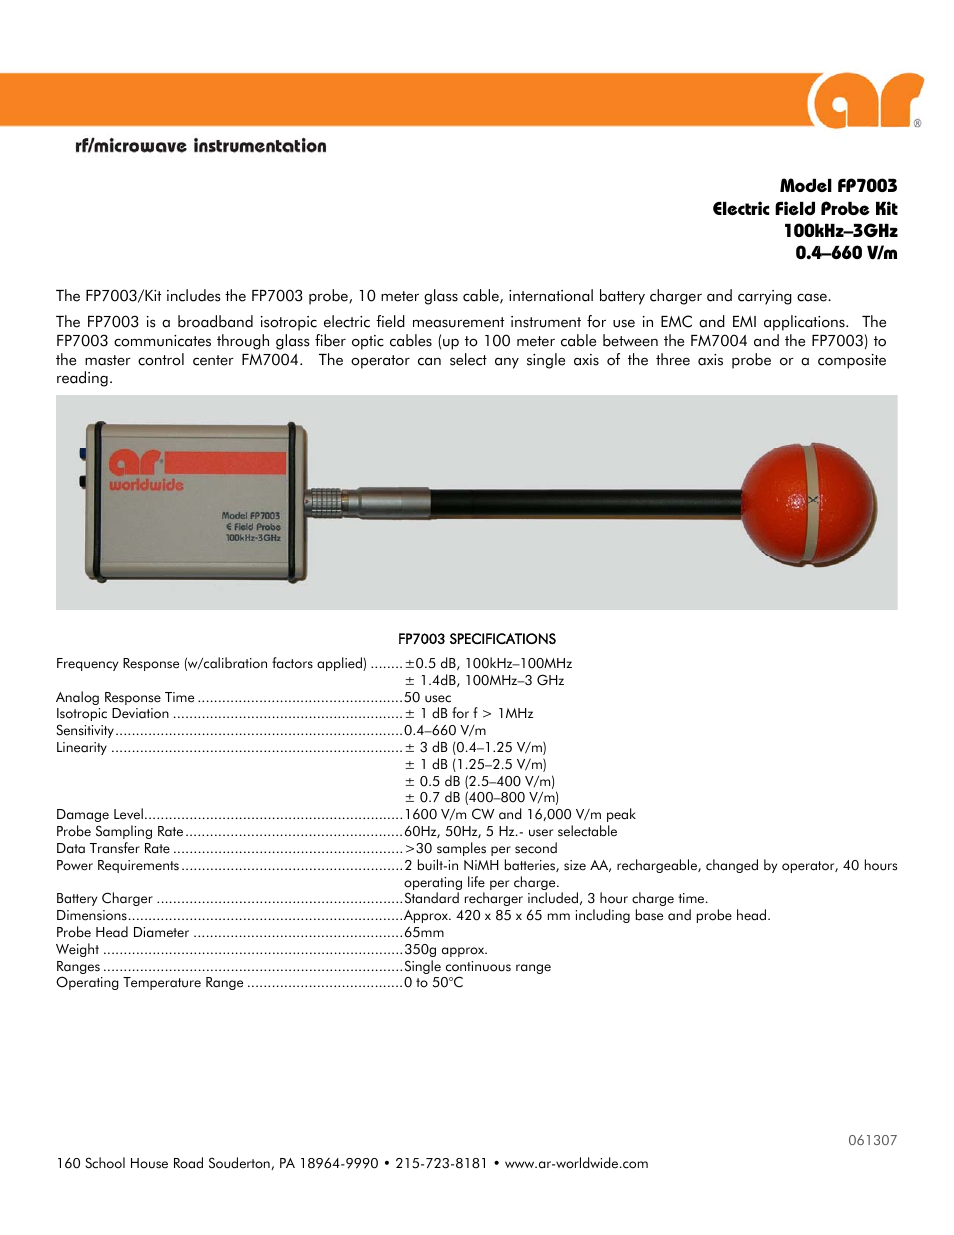 AmplifierResearch_FP7003-Kit